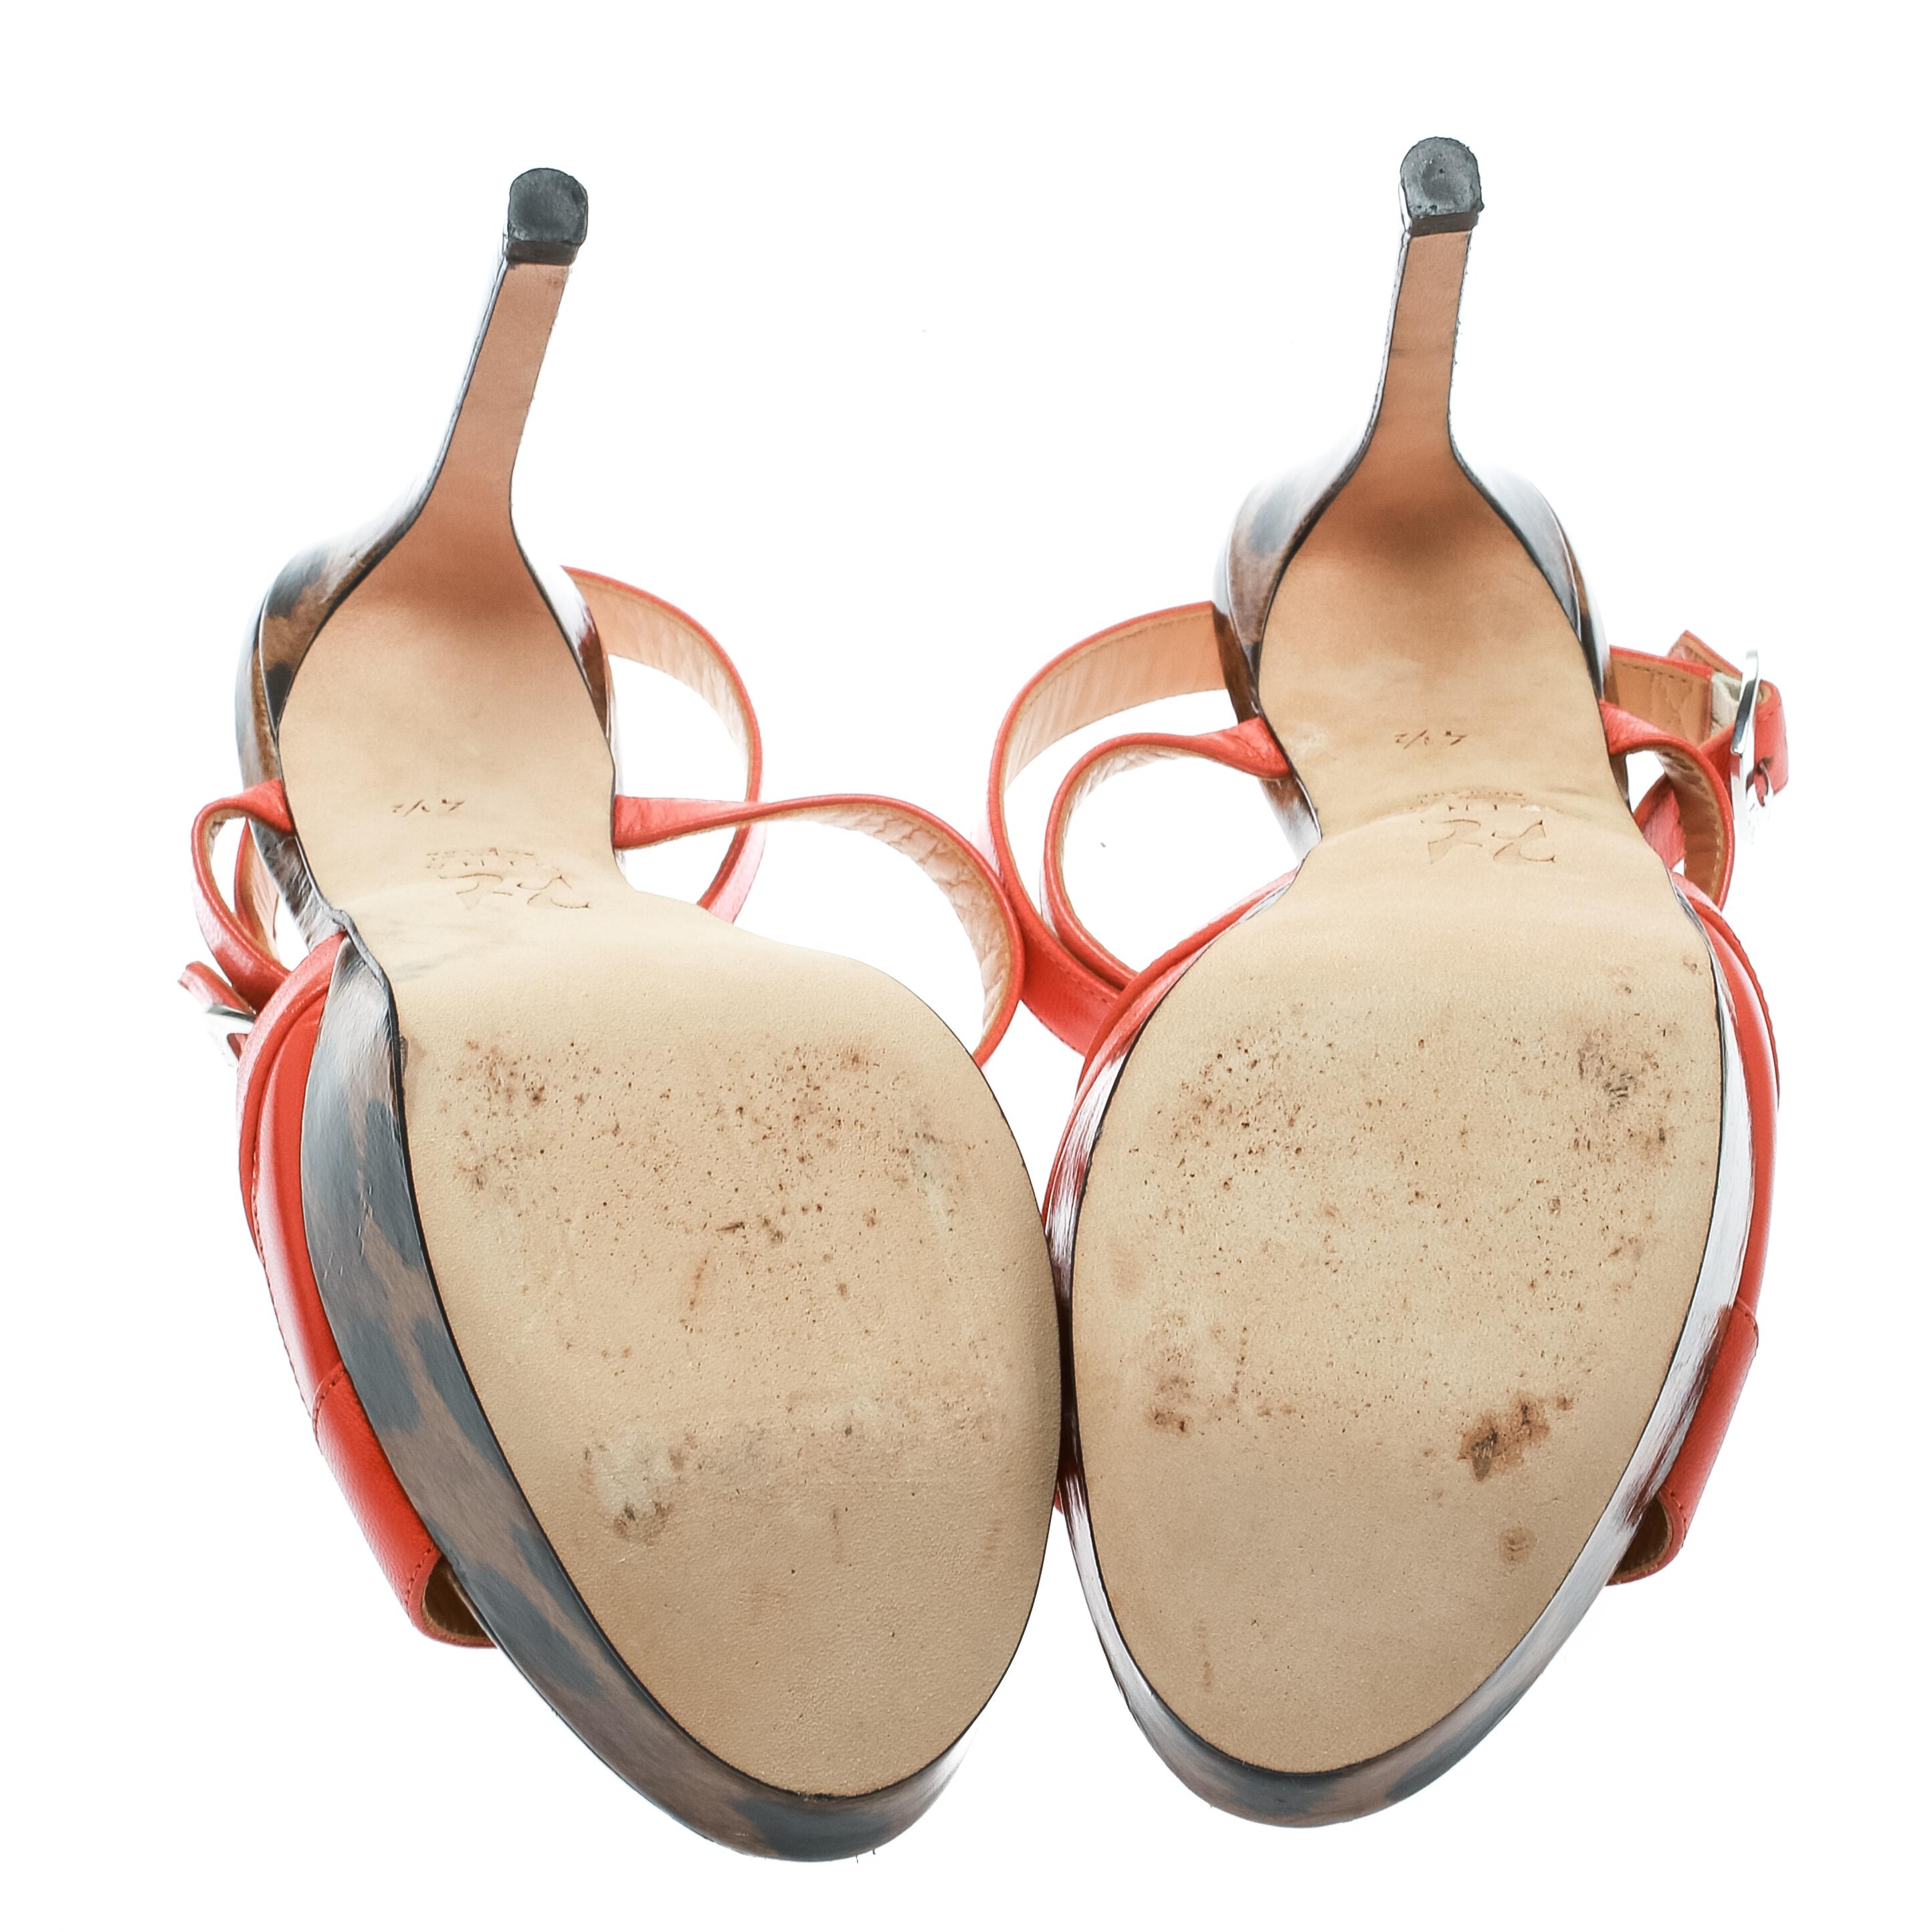 Gina Orange Leather Ankle Strap Platform Sandals Size 37.5 For Sale 3